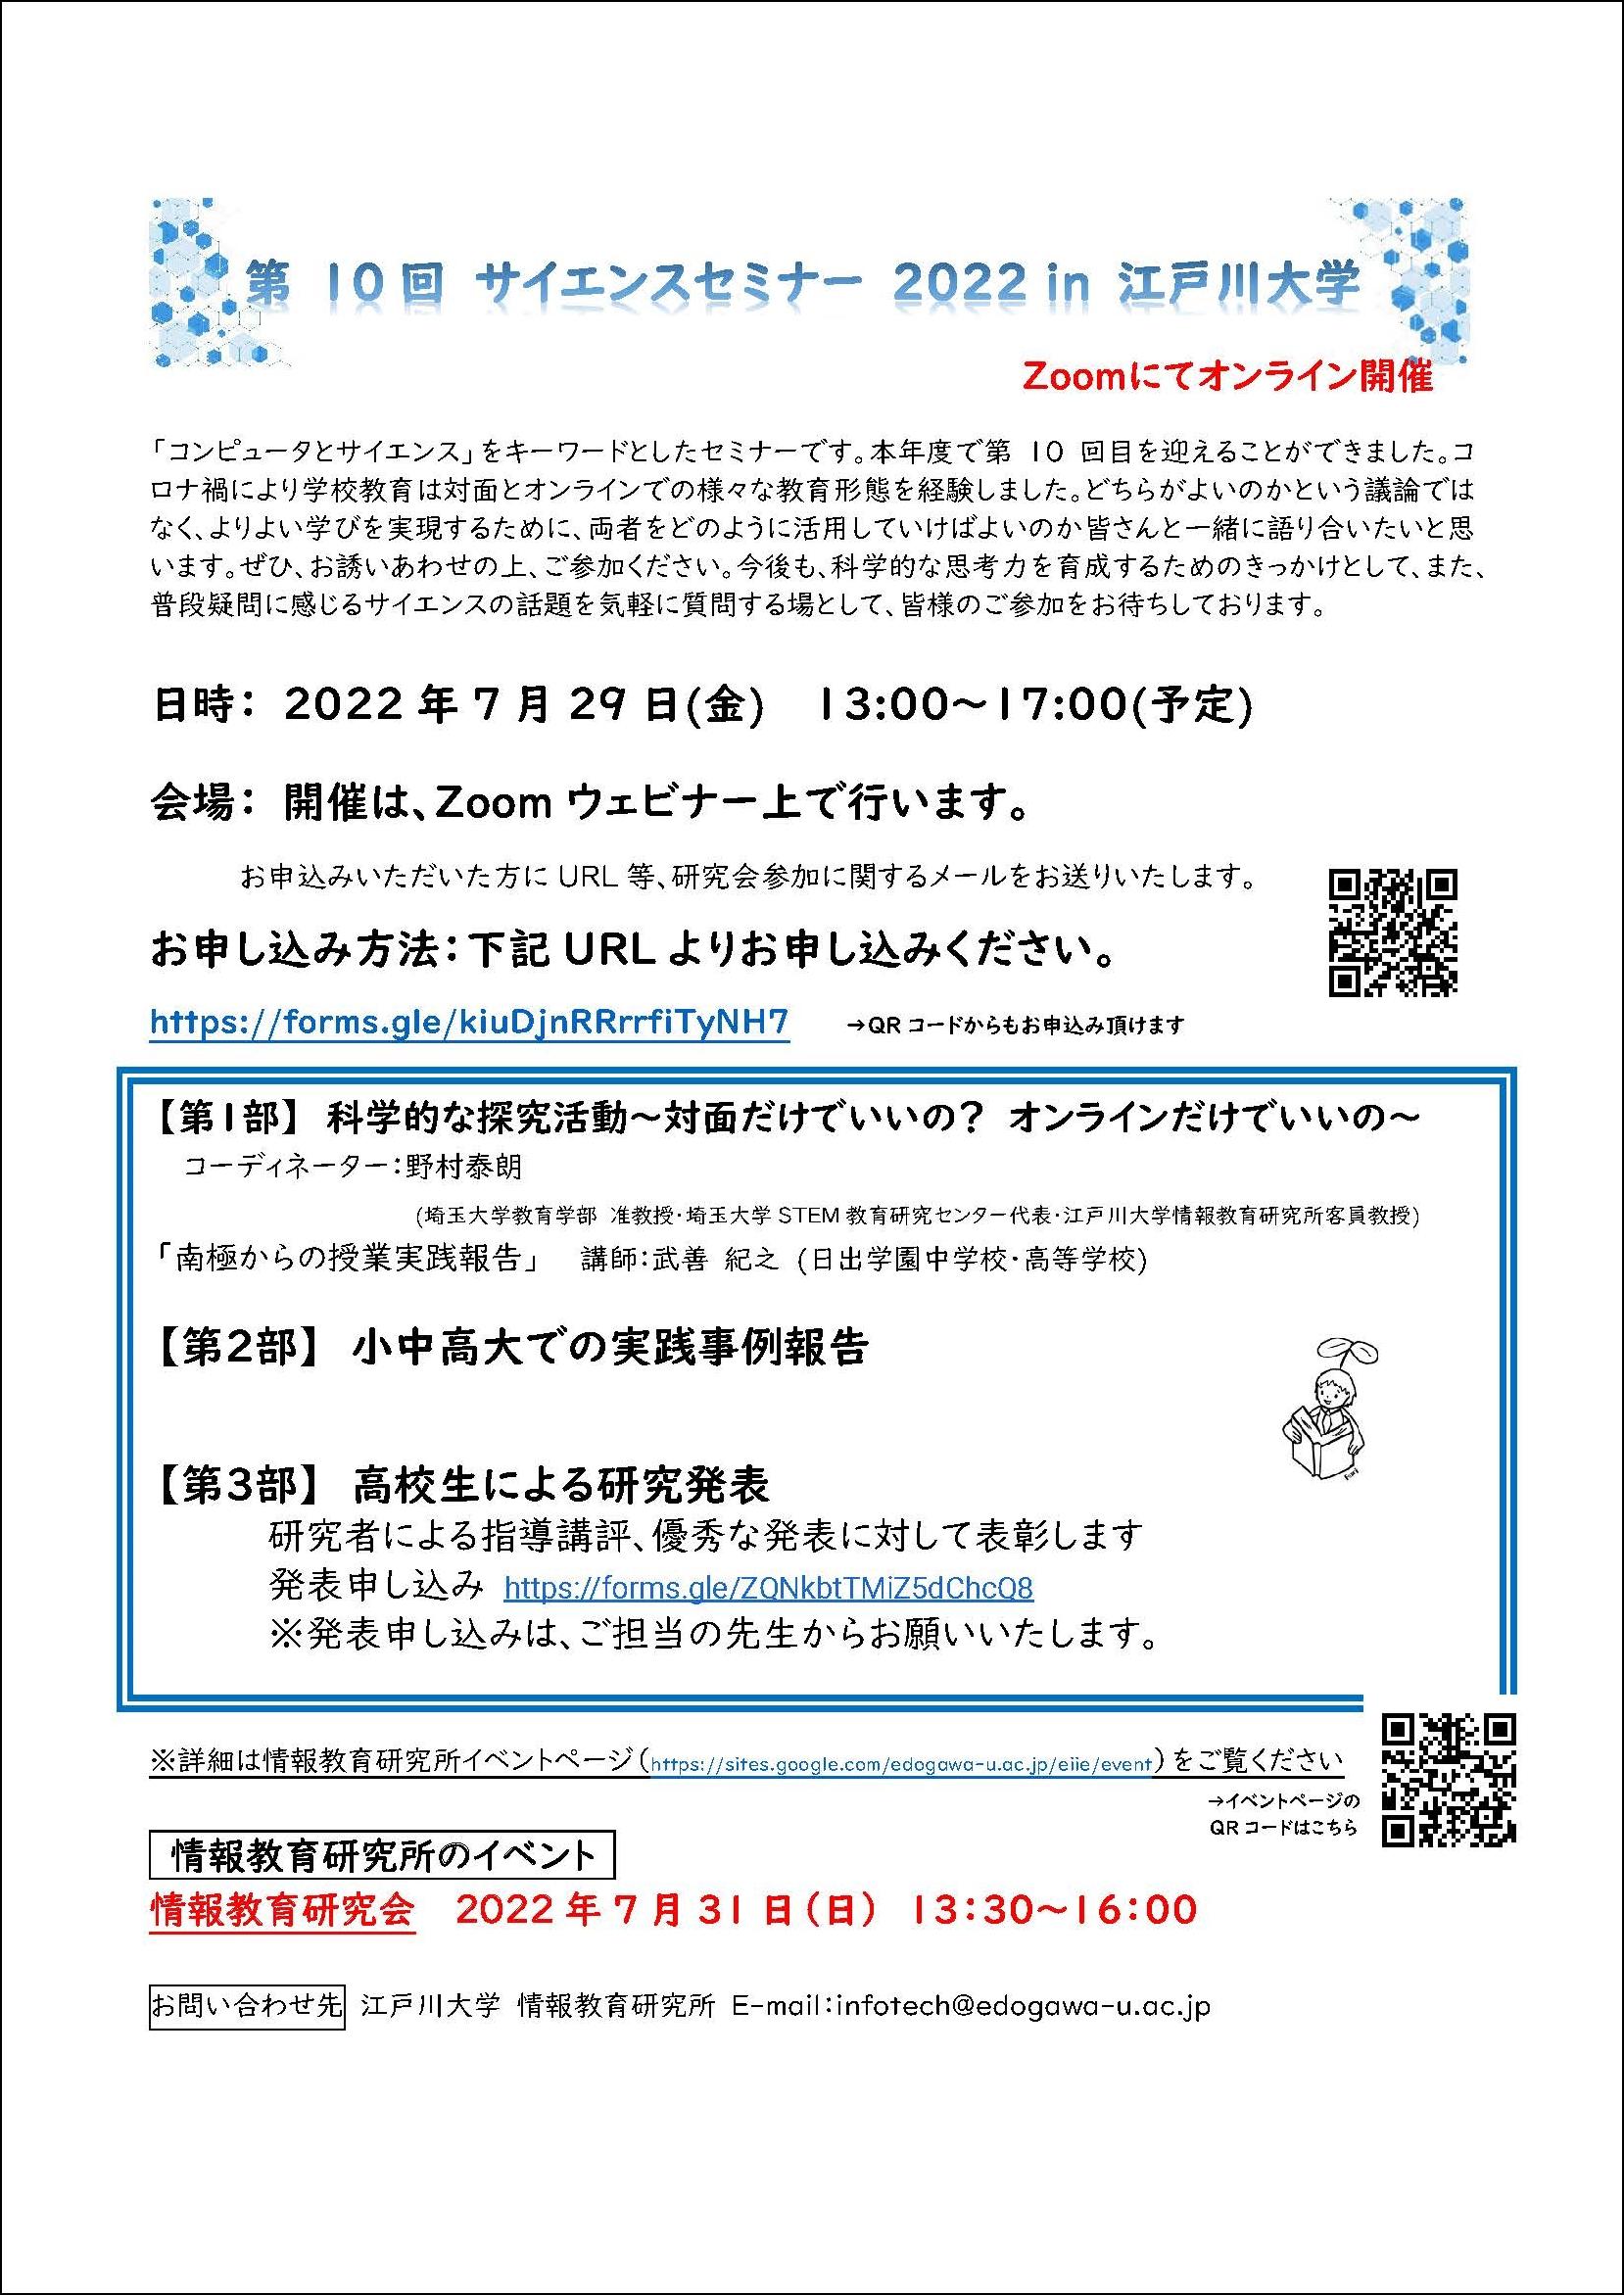 江戸川大学が7月29日に「第10回サイエンスセミナー2022」をオンラインで開催 -- 「科学的な探究活動～対面だけでいいの？オンラインだけでいいの～」がテーマ